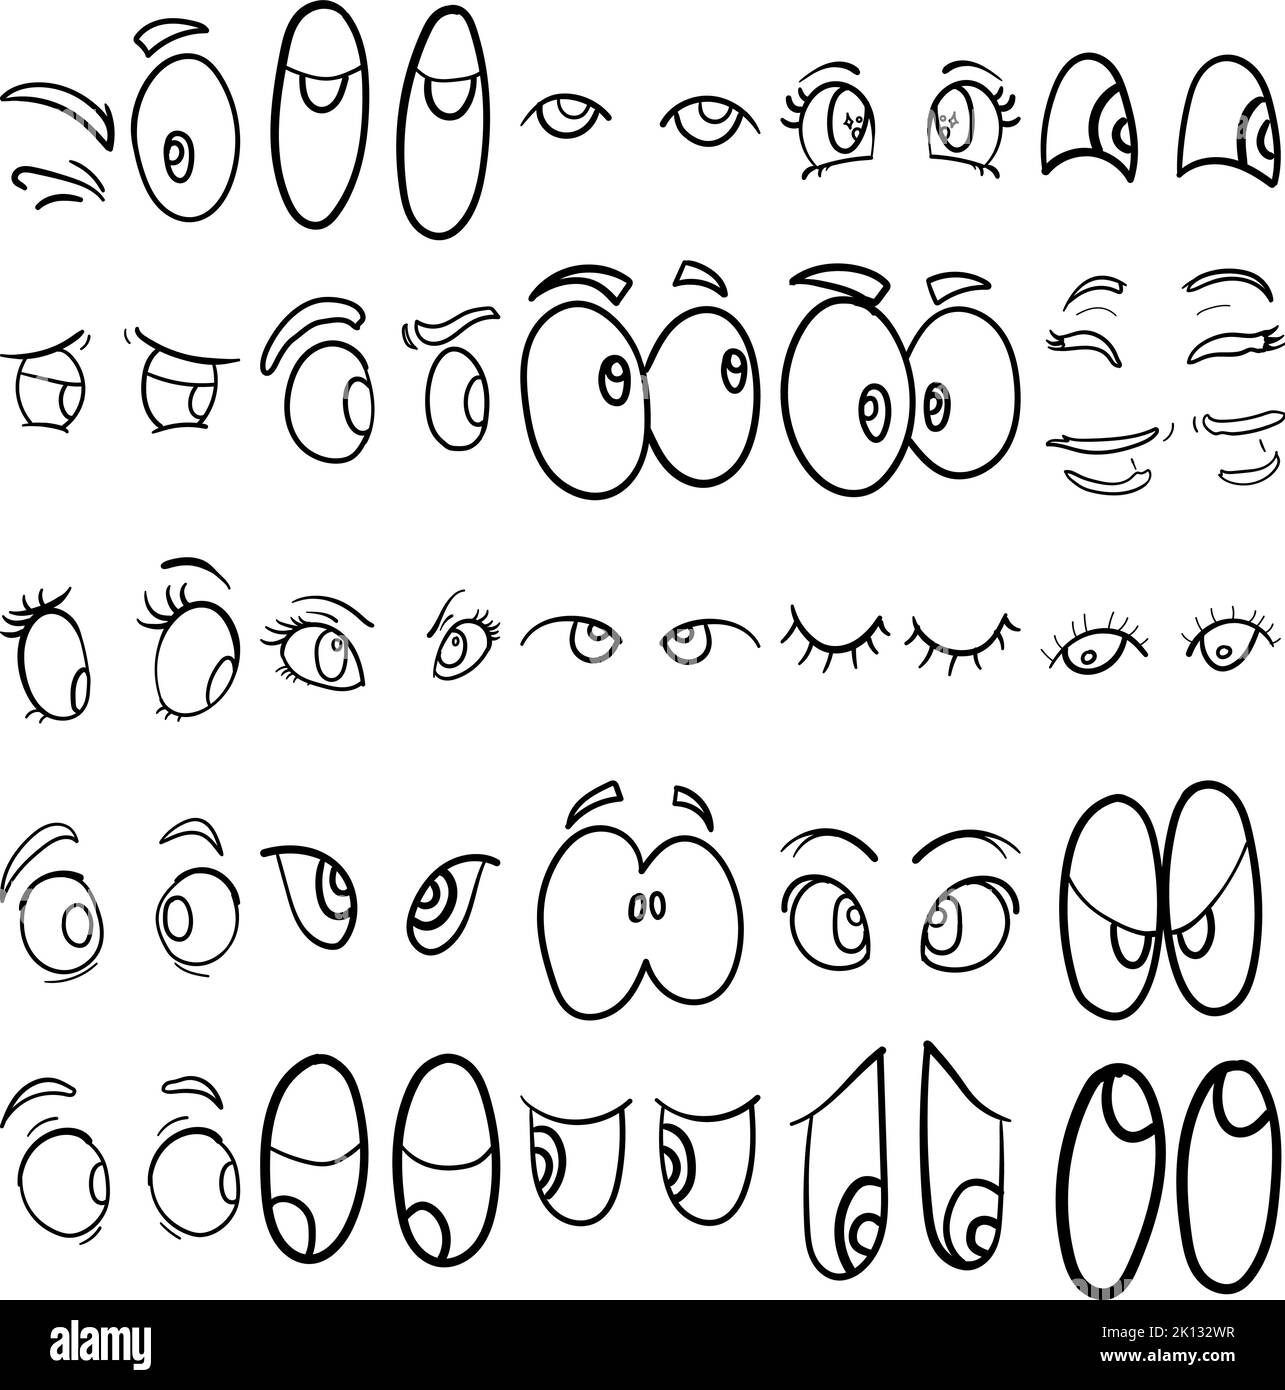 Augen handgezeichnetes Doodle Line Art Outline Set mit Augen, Optik, Augenausdruck, Augen Körpersprache, Aufschauen, Blick nach unten, Blick zur Seite Stock Vektor